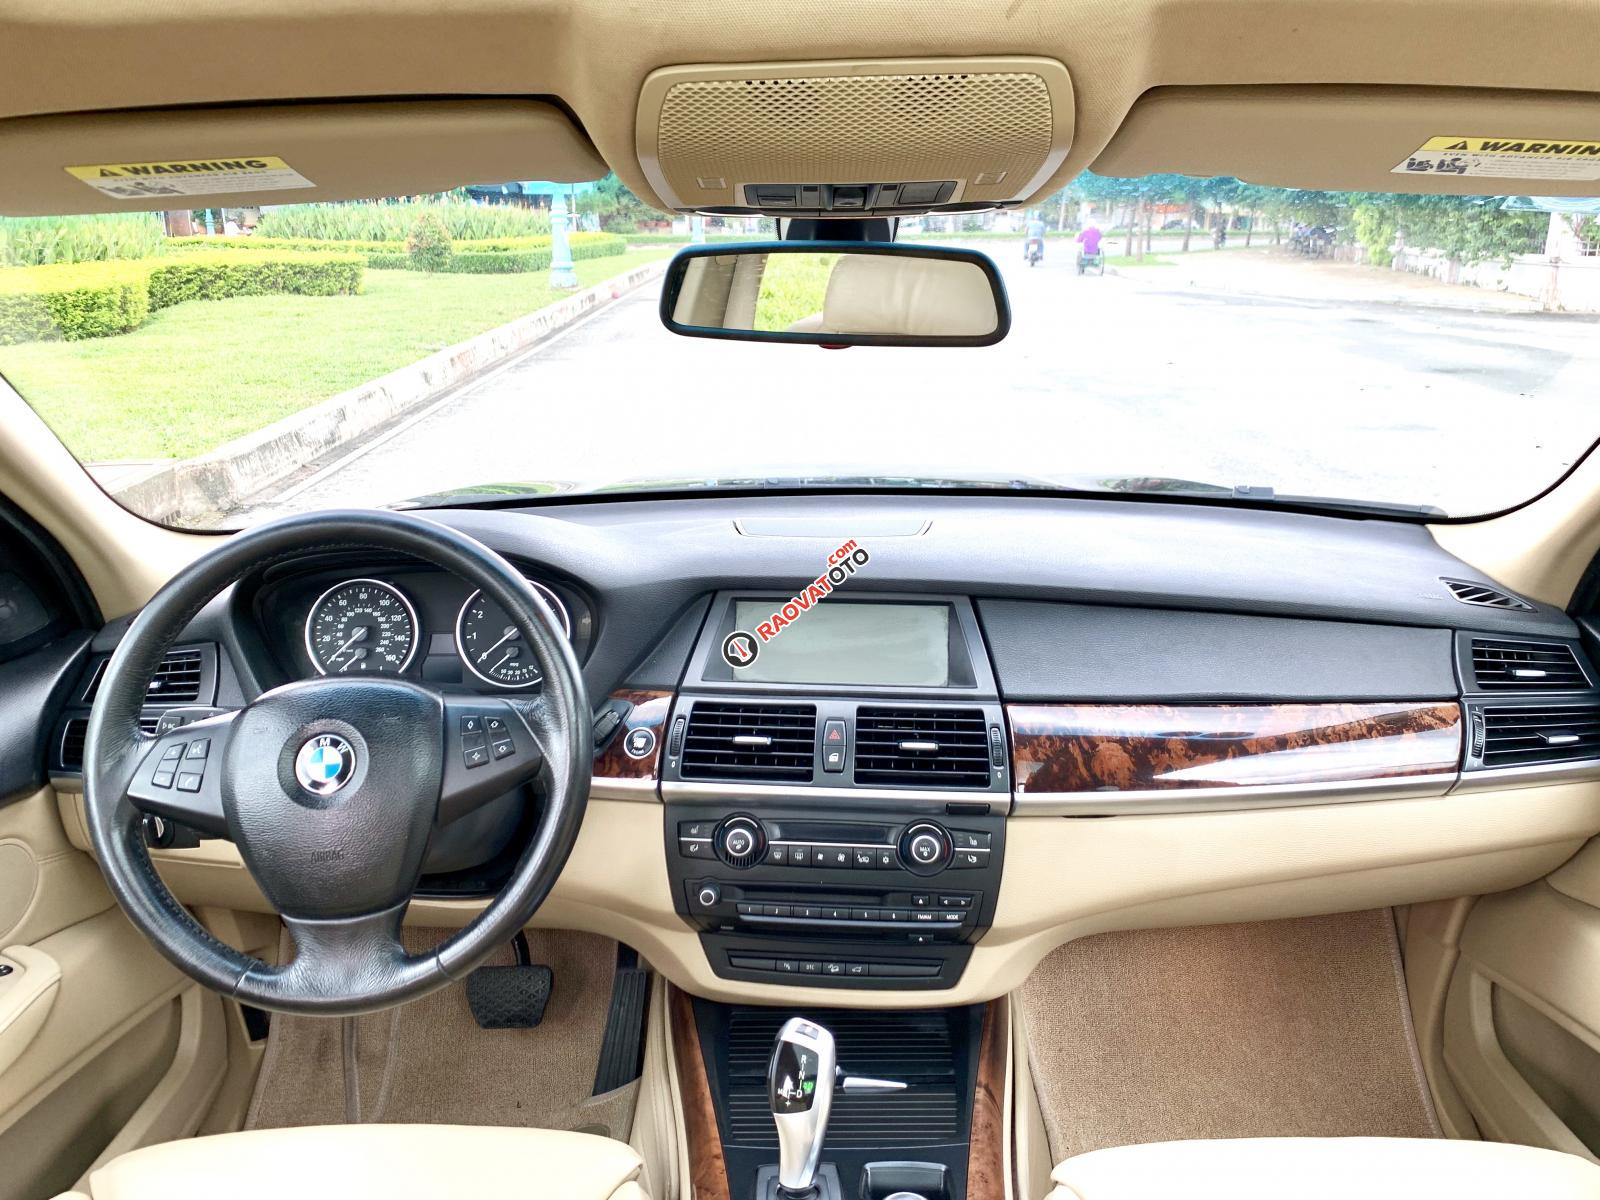 BMW X5 3.0 nhập Mỹ 2009 8 chỗ, hàng full cao cấp vào đủ đồ hai cửa sổ trời hai-9